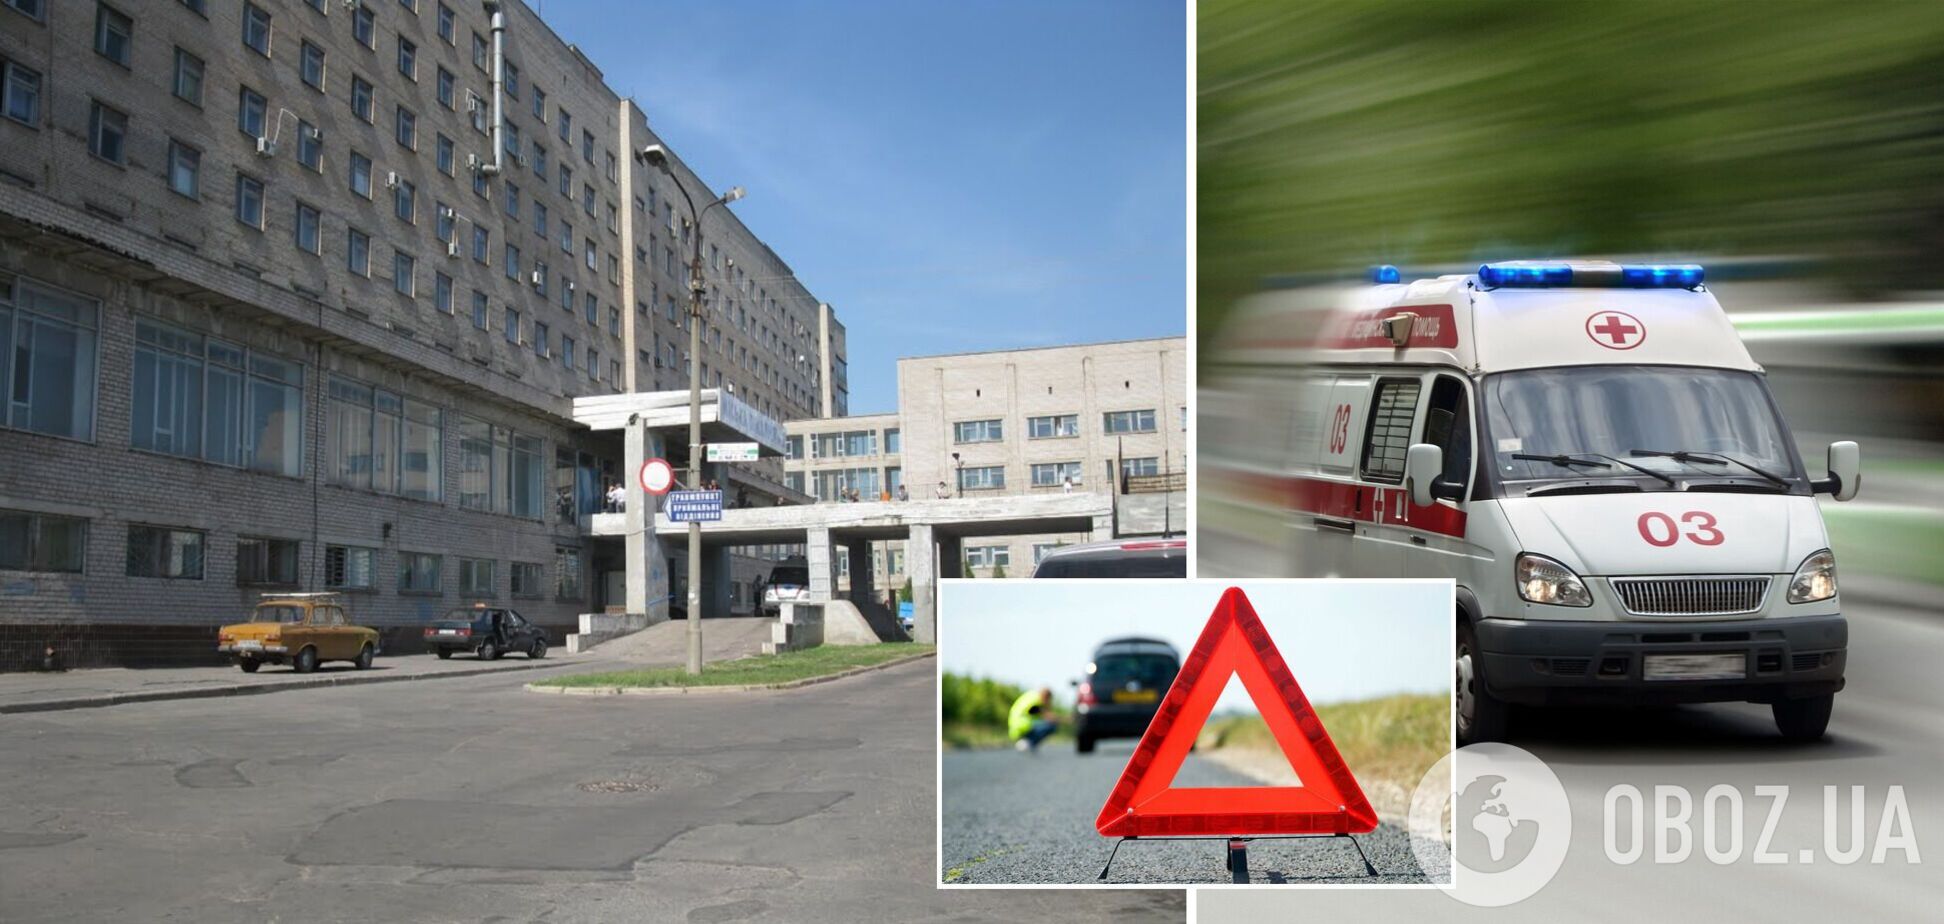 В Кривом Роге больница отказалась принять подростка в критическом состоянии после ДТП: детали скандала